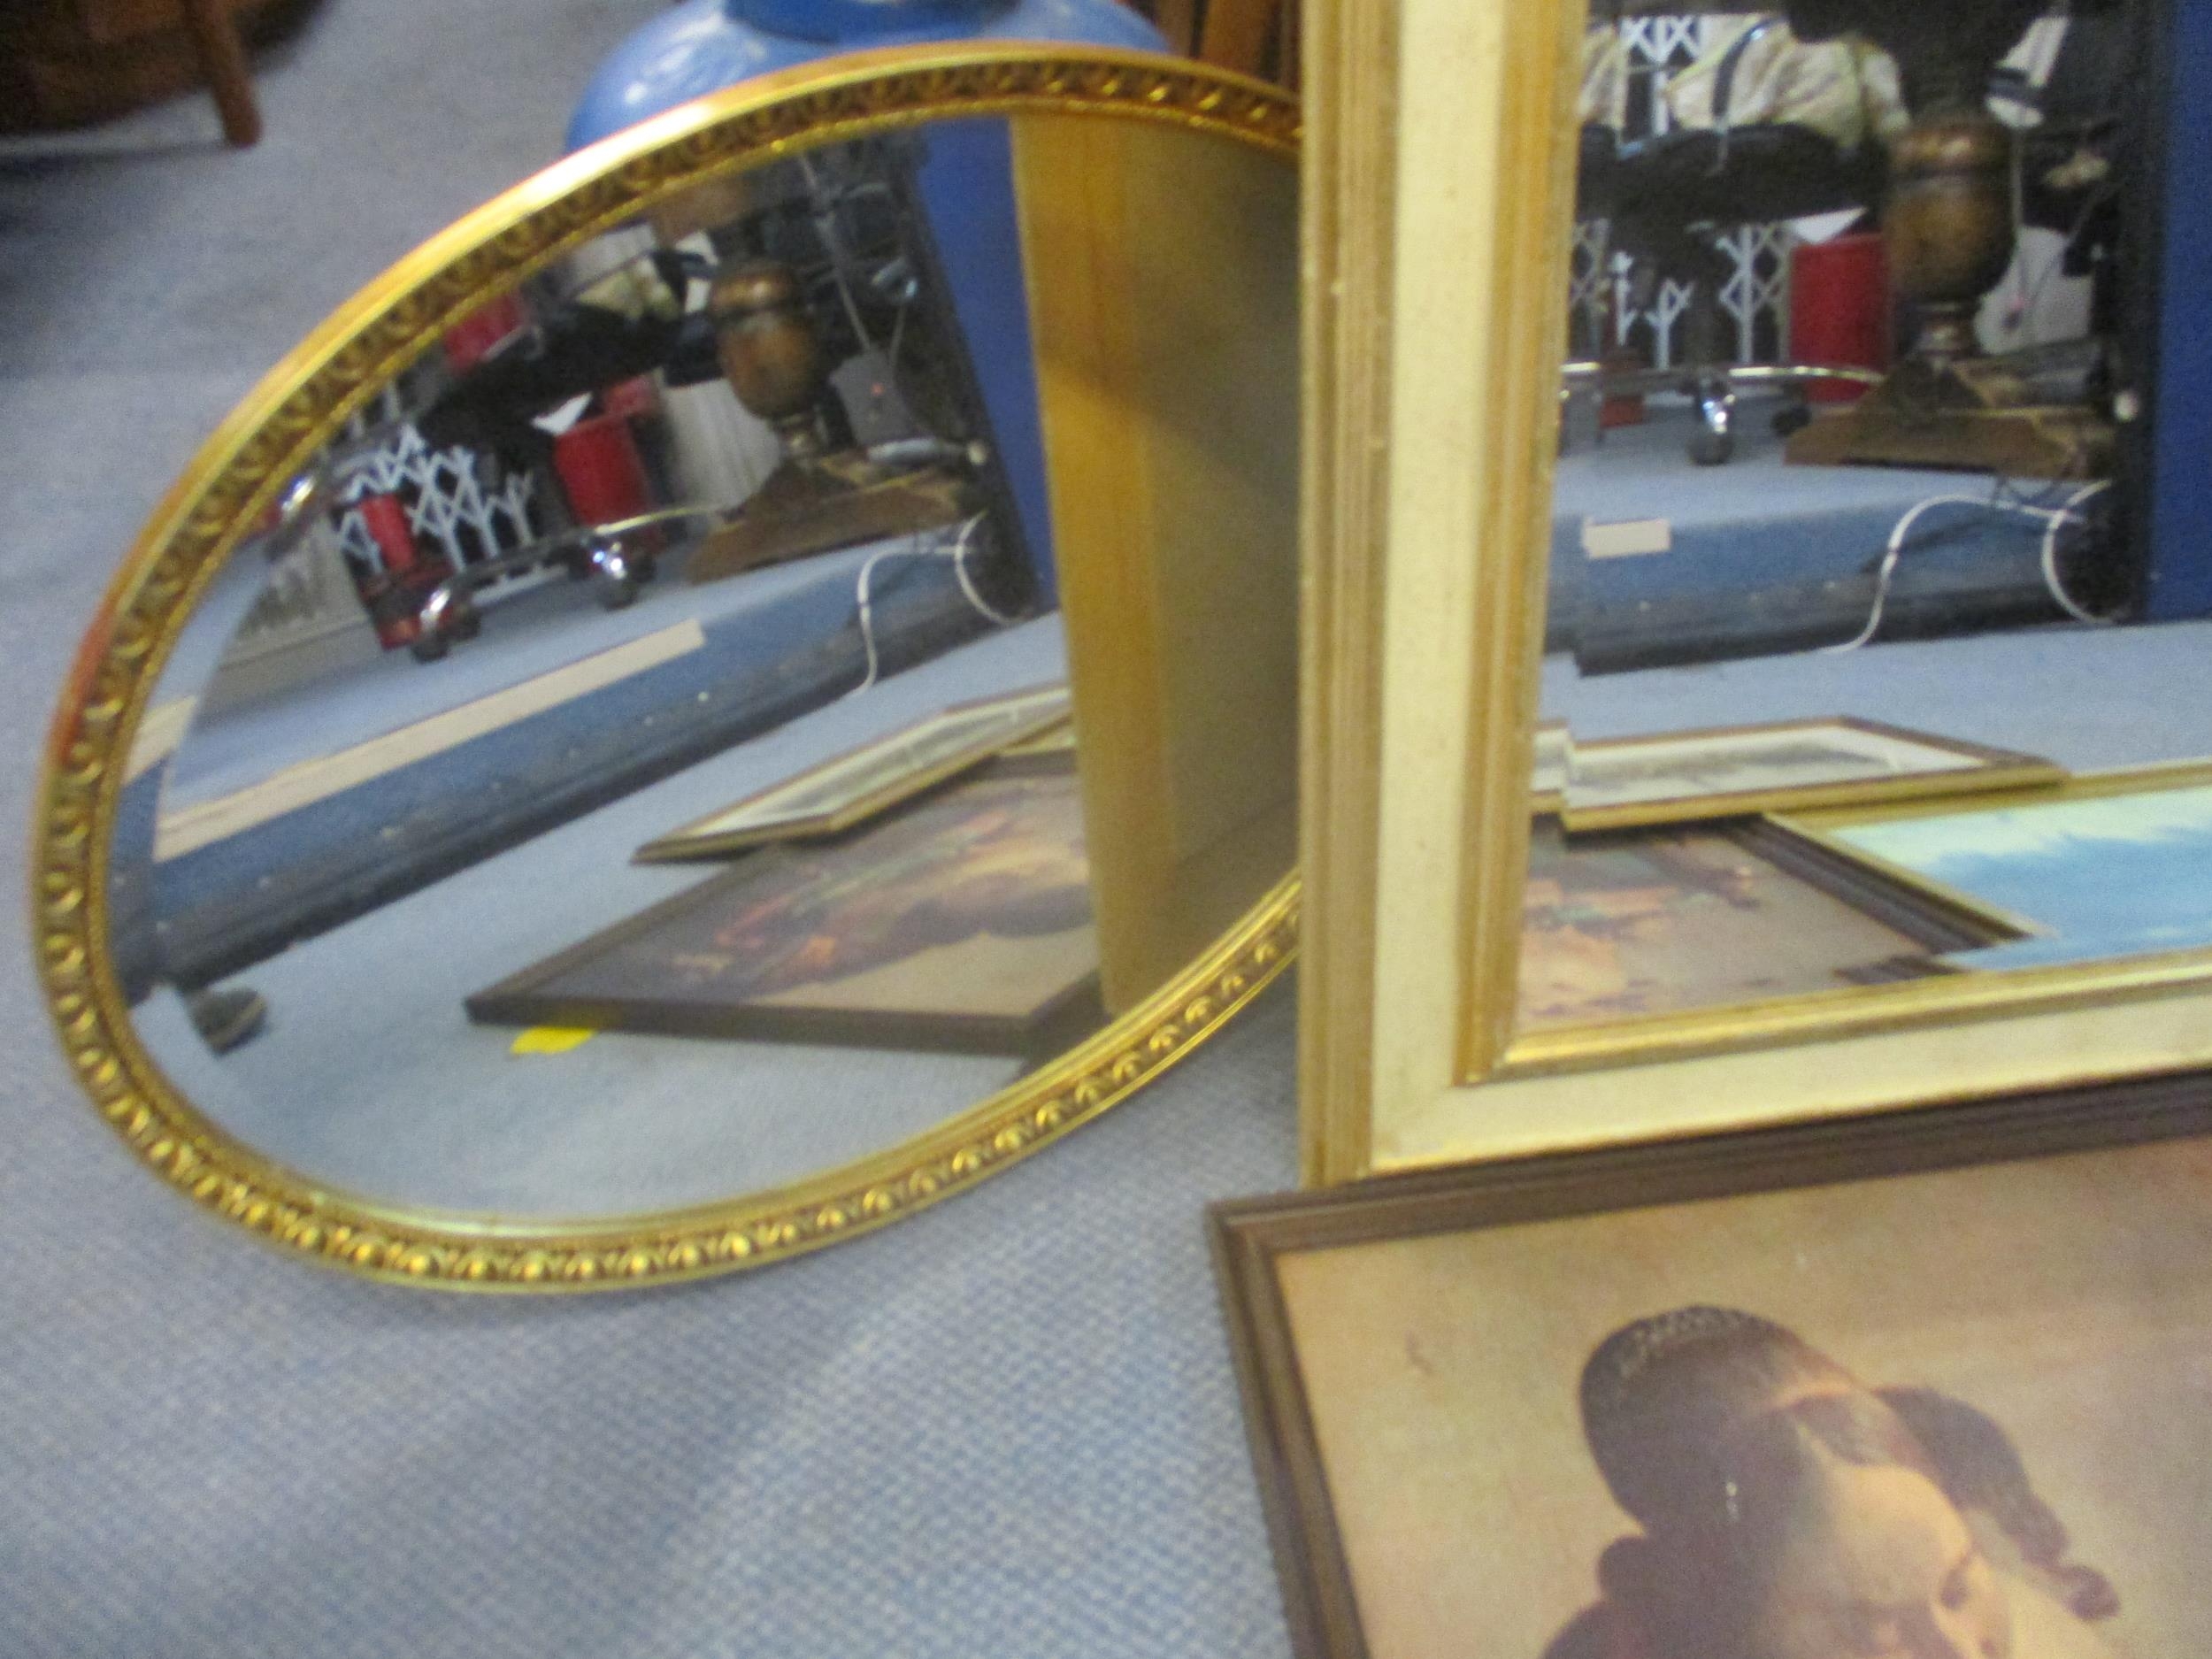 A gilt framed rectangular wall mirror and an oval gilt framed wall mirror, along with various framed - Bild 4 aus 4